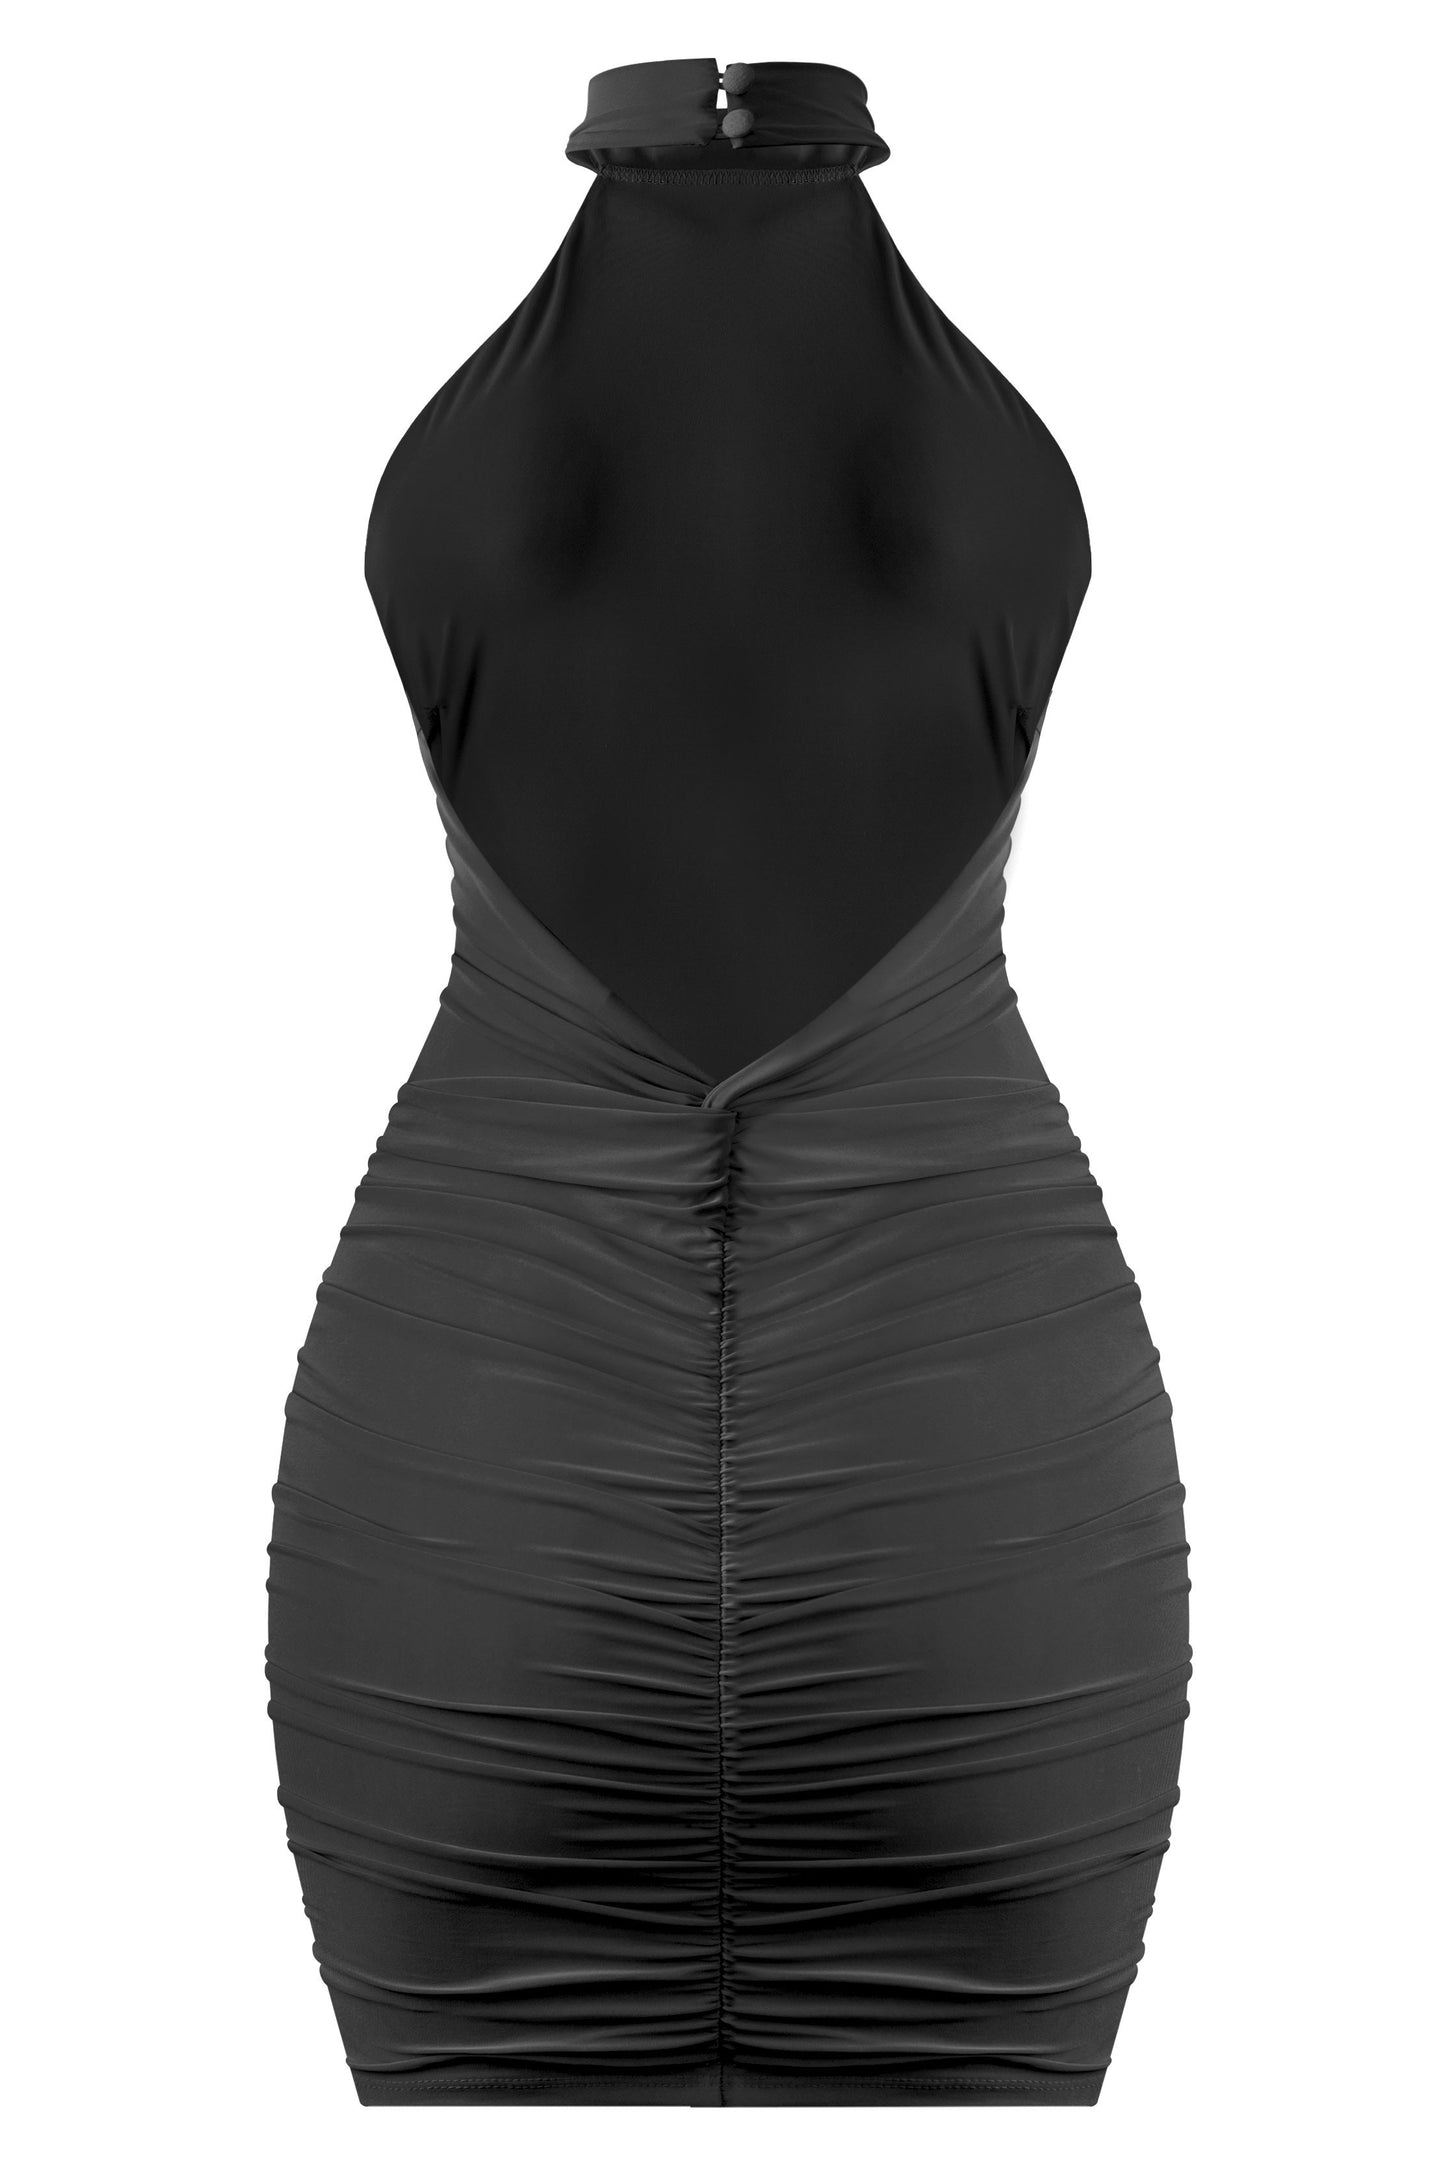 Brenda halter open back dress - black